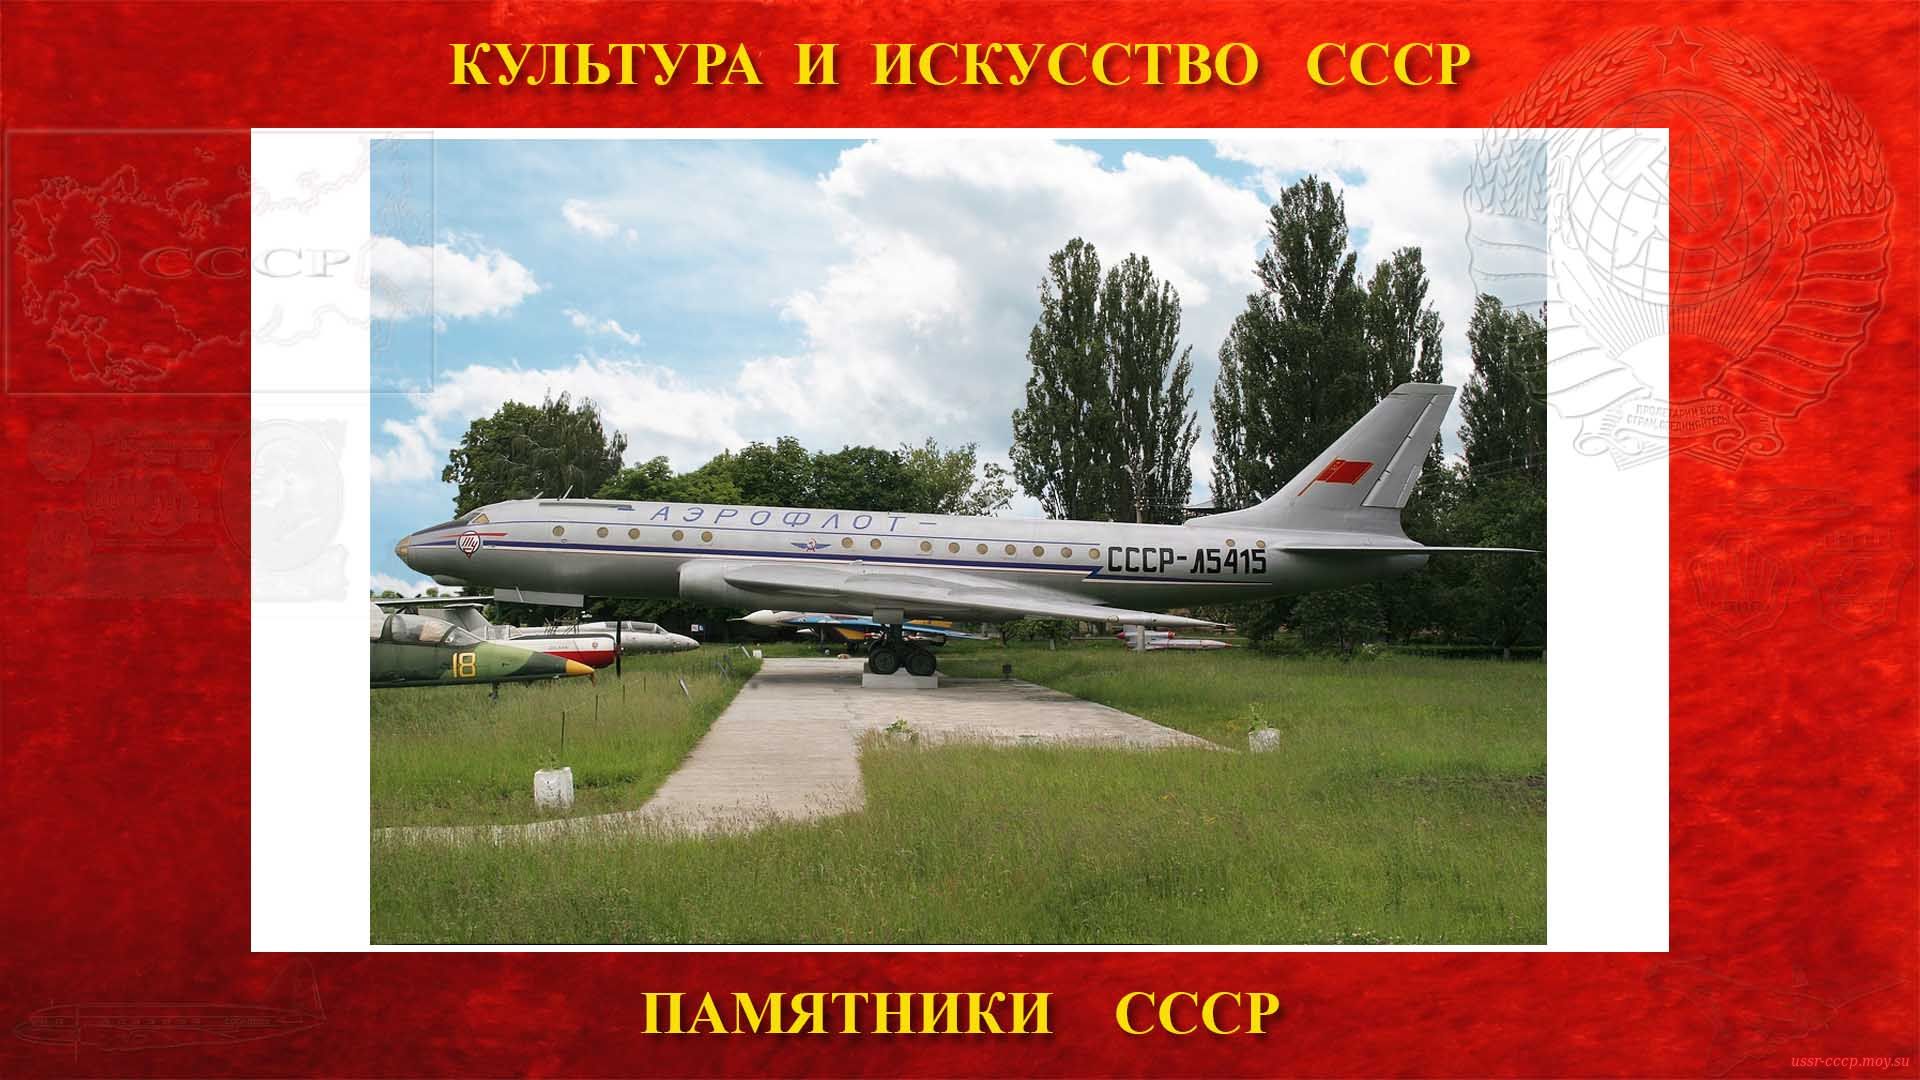 Памятник — Самолёт Ту-104 СССР-Л5415 — Аэропорт Жуляны (Киев) (повествование)